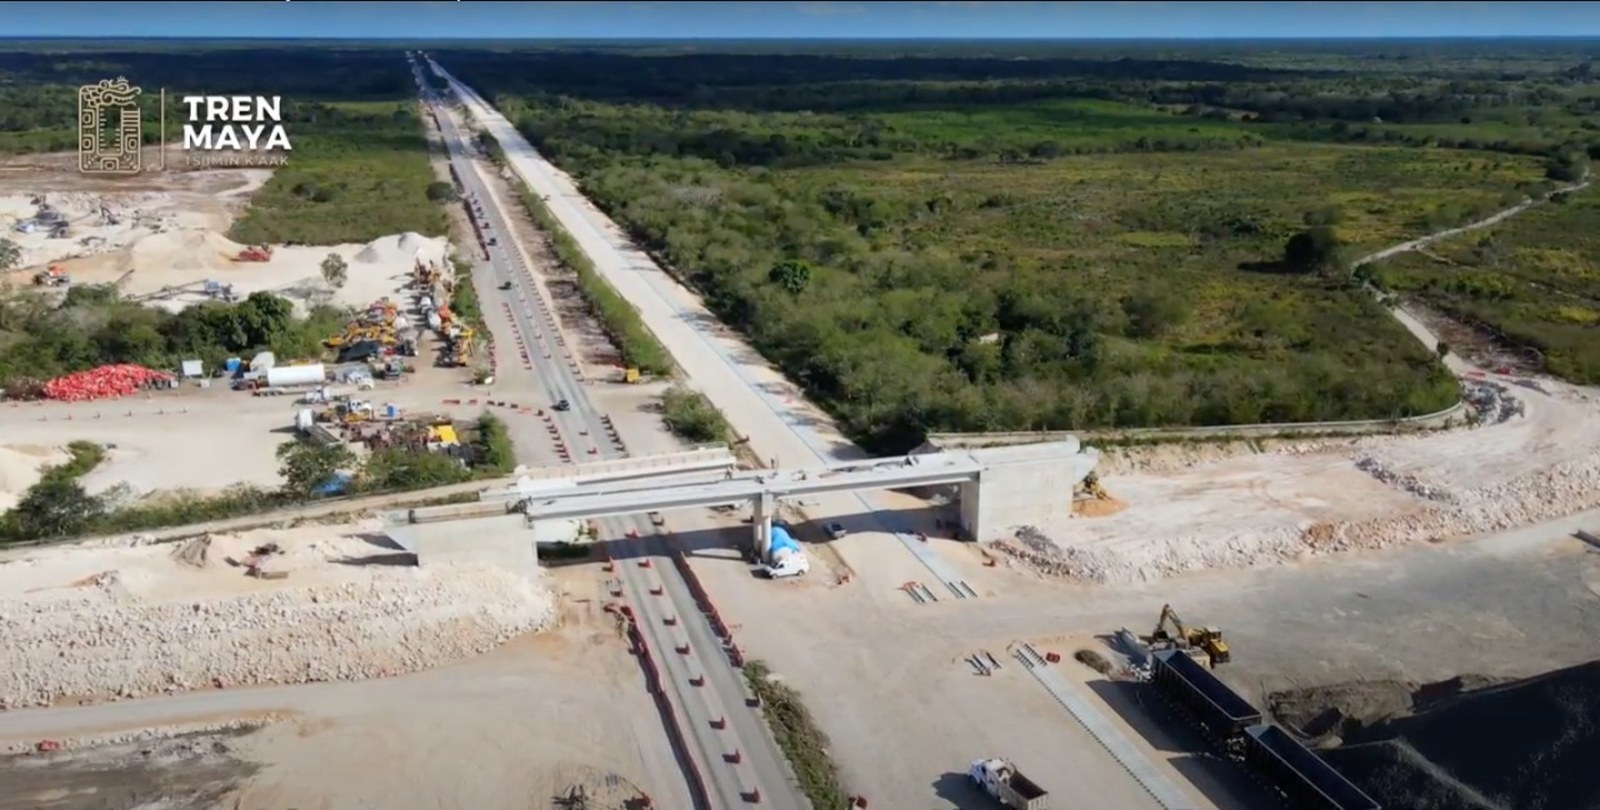 Construcción del Tren Maya avanza con rapidez en el Sureste de México